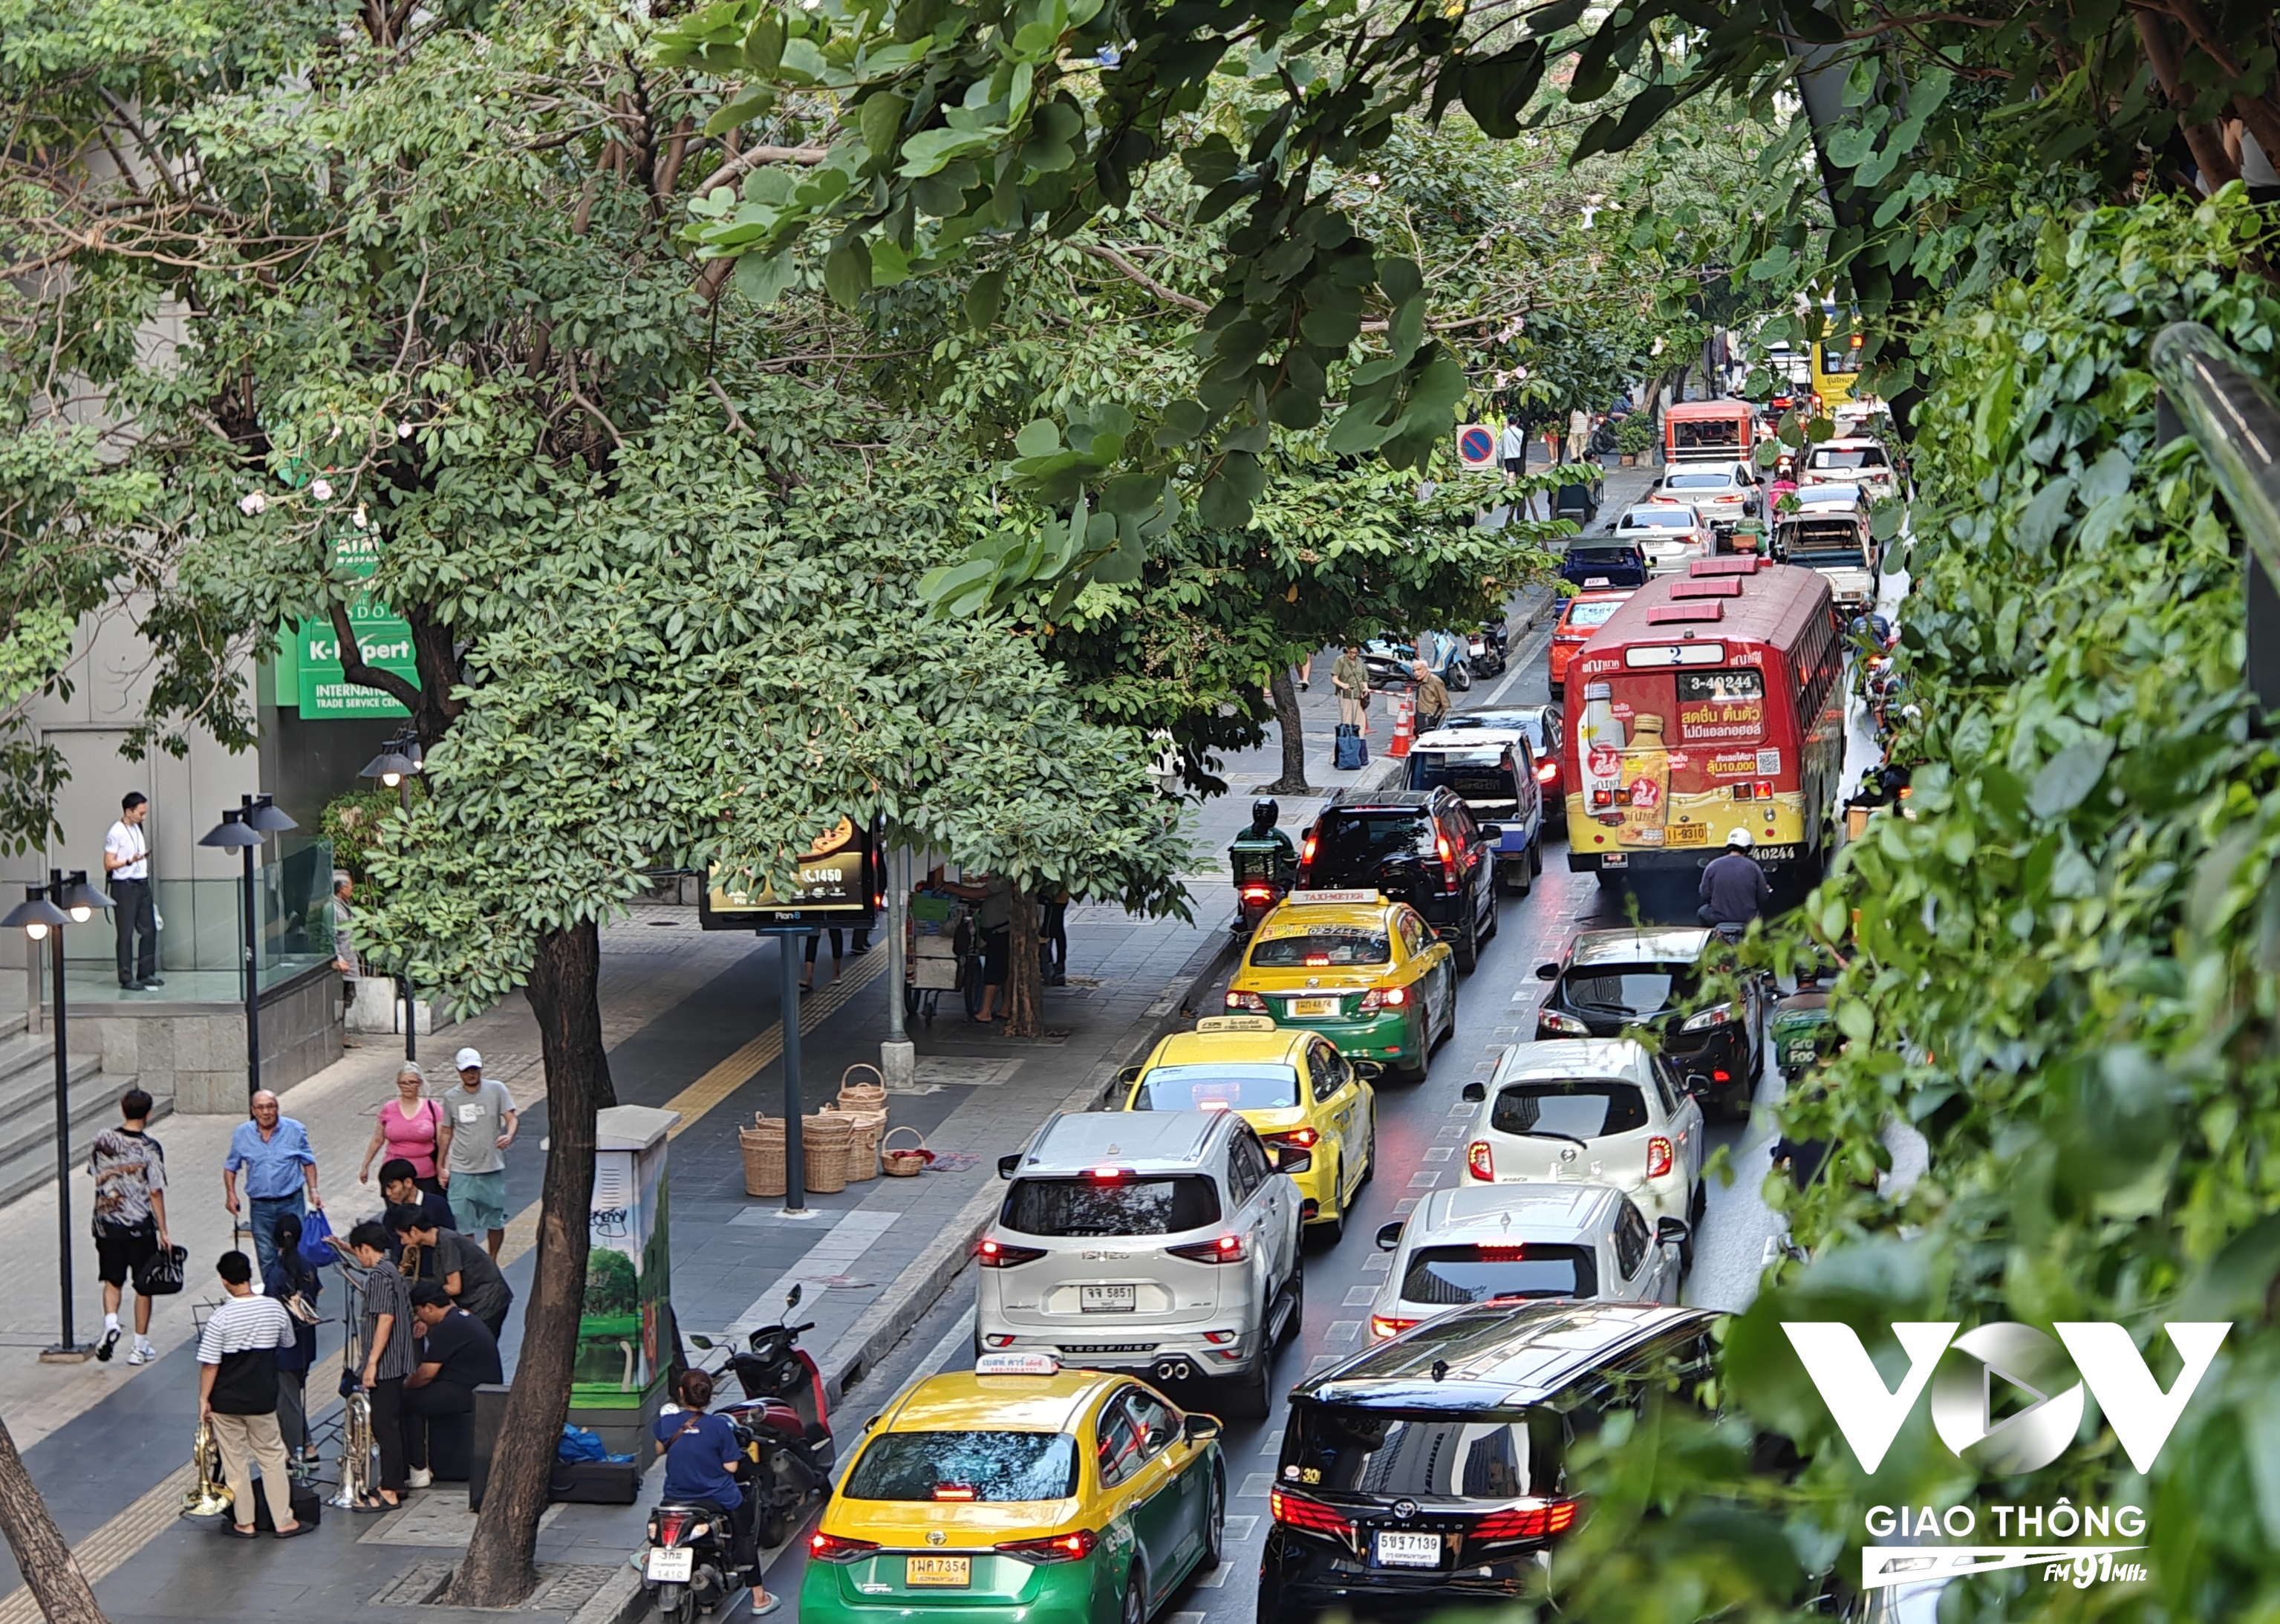 Bangkok nổi tiếng với đặc sản ùn tắc. Mặc dù vậy, so với năm 2012, hiện nay, sau hơn 1 thập kỷ, ùn tắc triền miên kéo dài vài tiếng đồng hồ đã thưa vắng hơn.